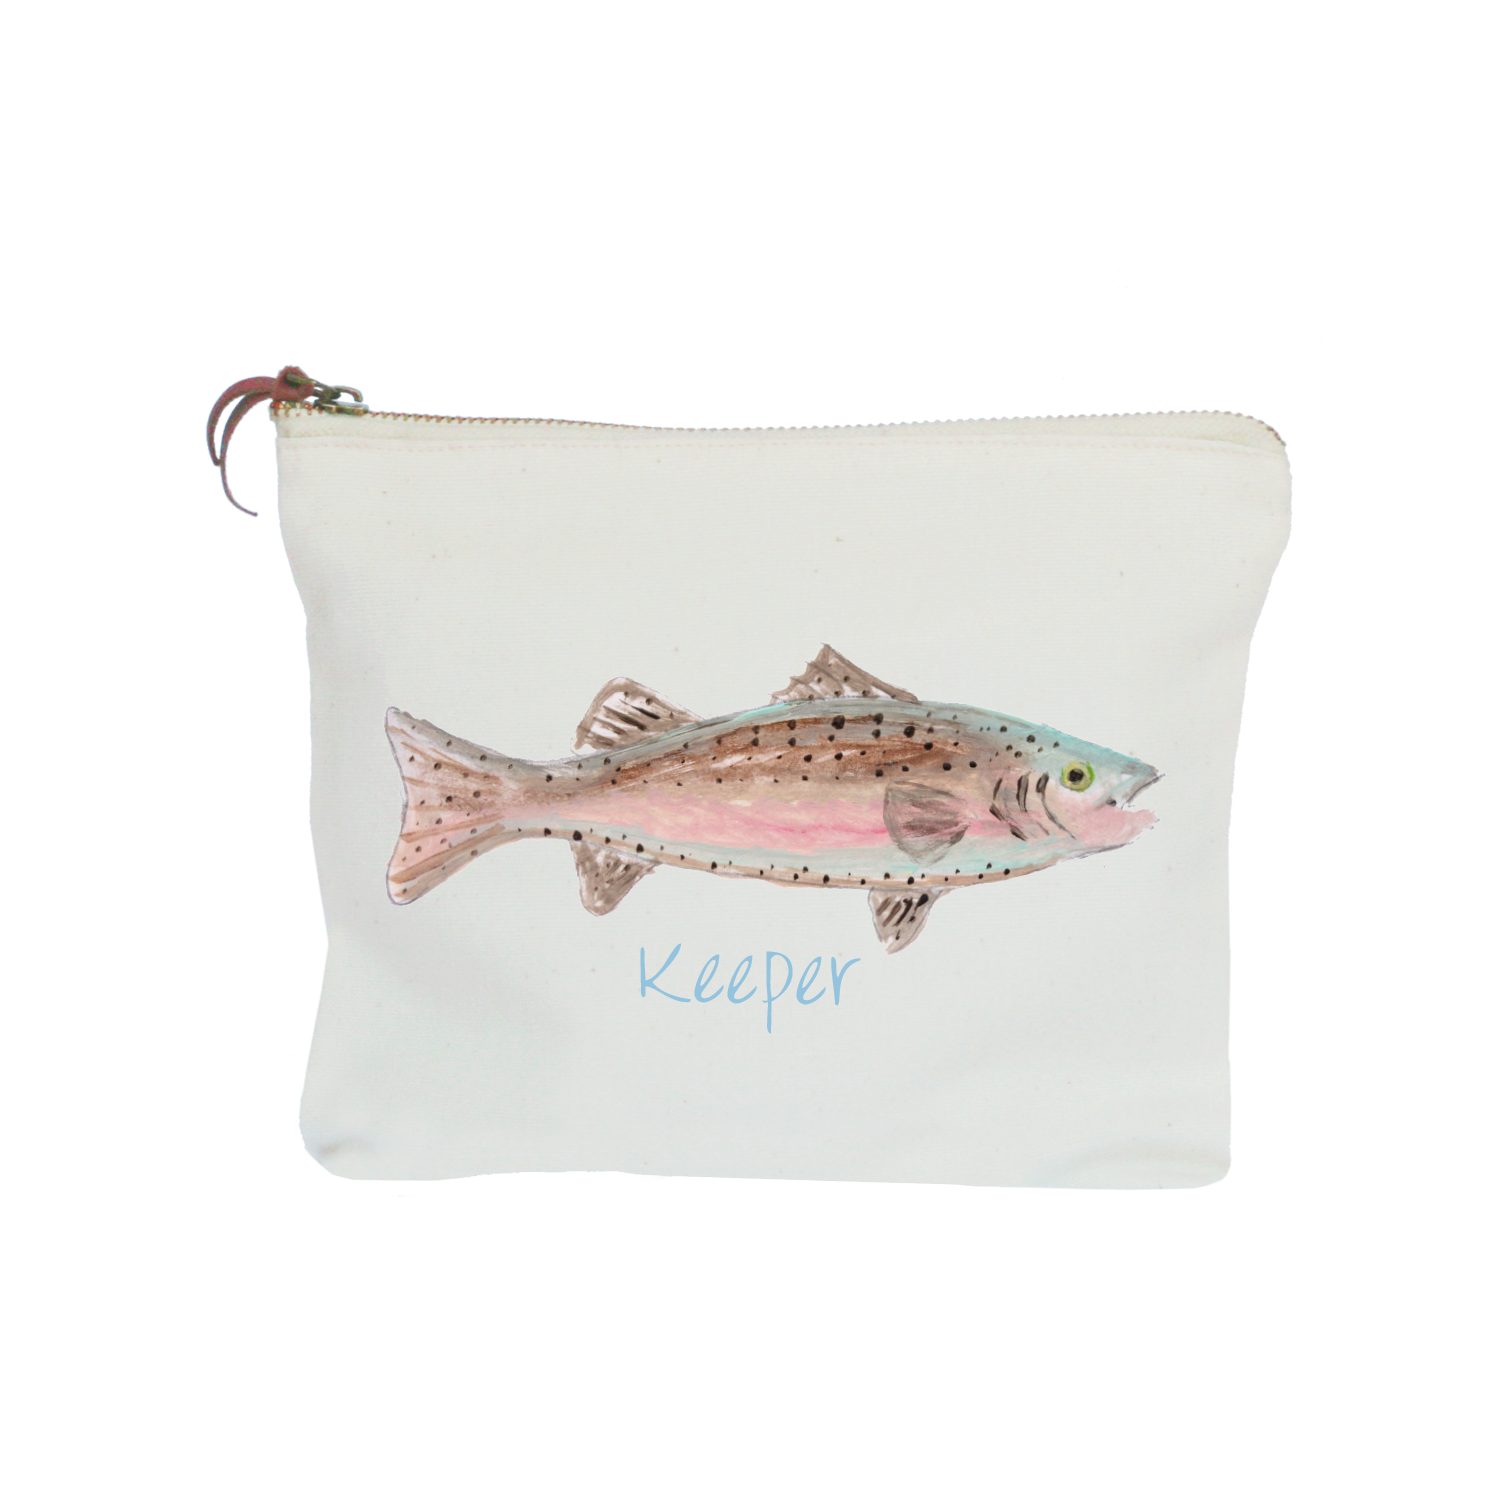 keeper fish zipper pouch